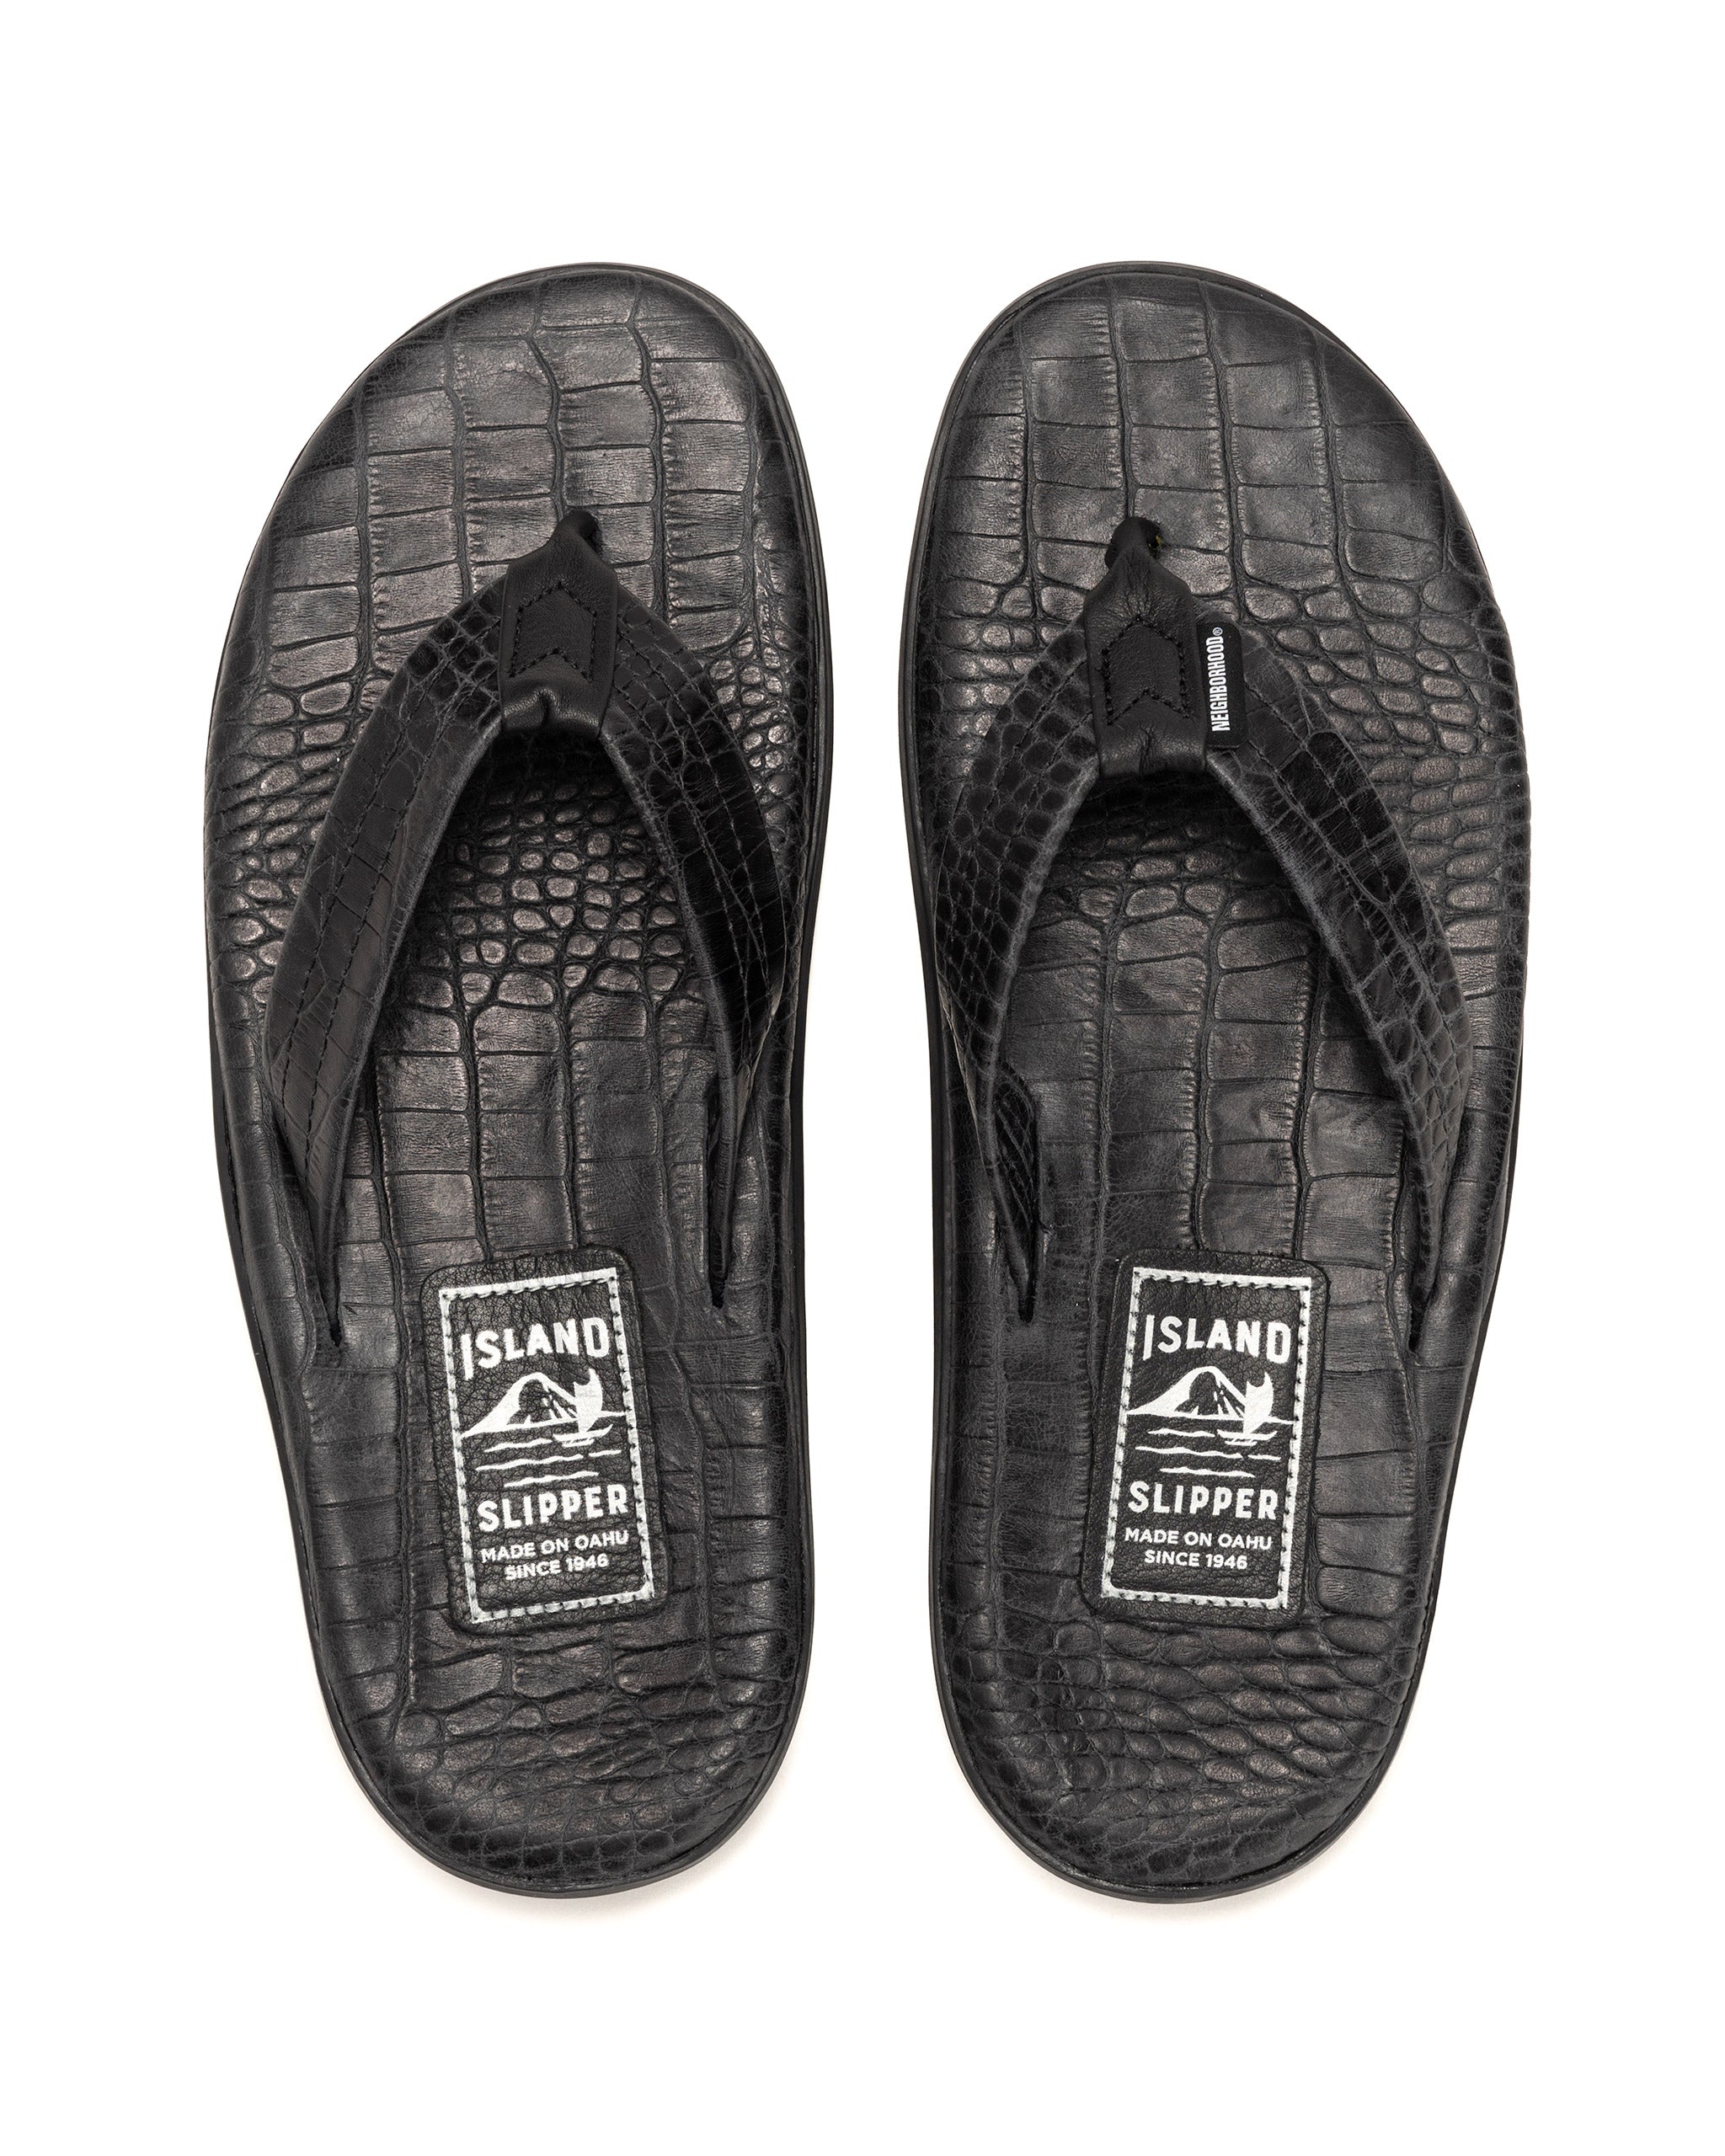 正規品販売! NEIGHBORHOOD ISLAND サンダル SANDAL SLIPPER 靴 